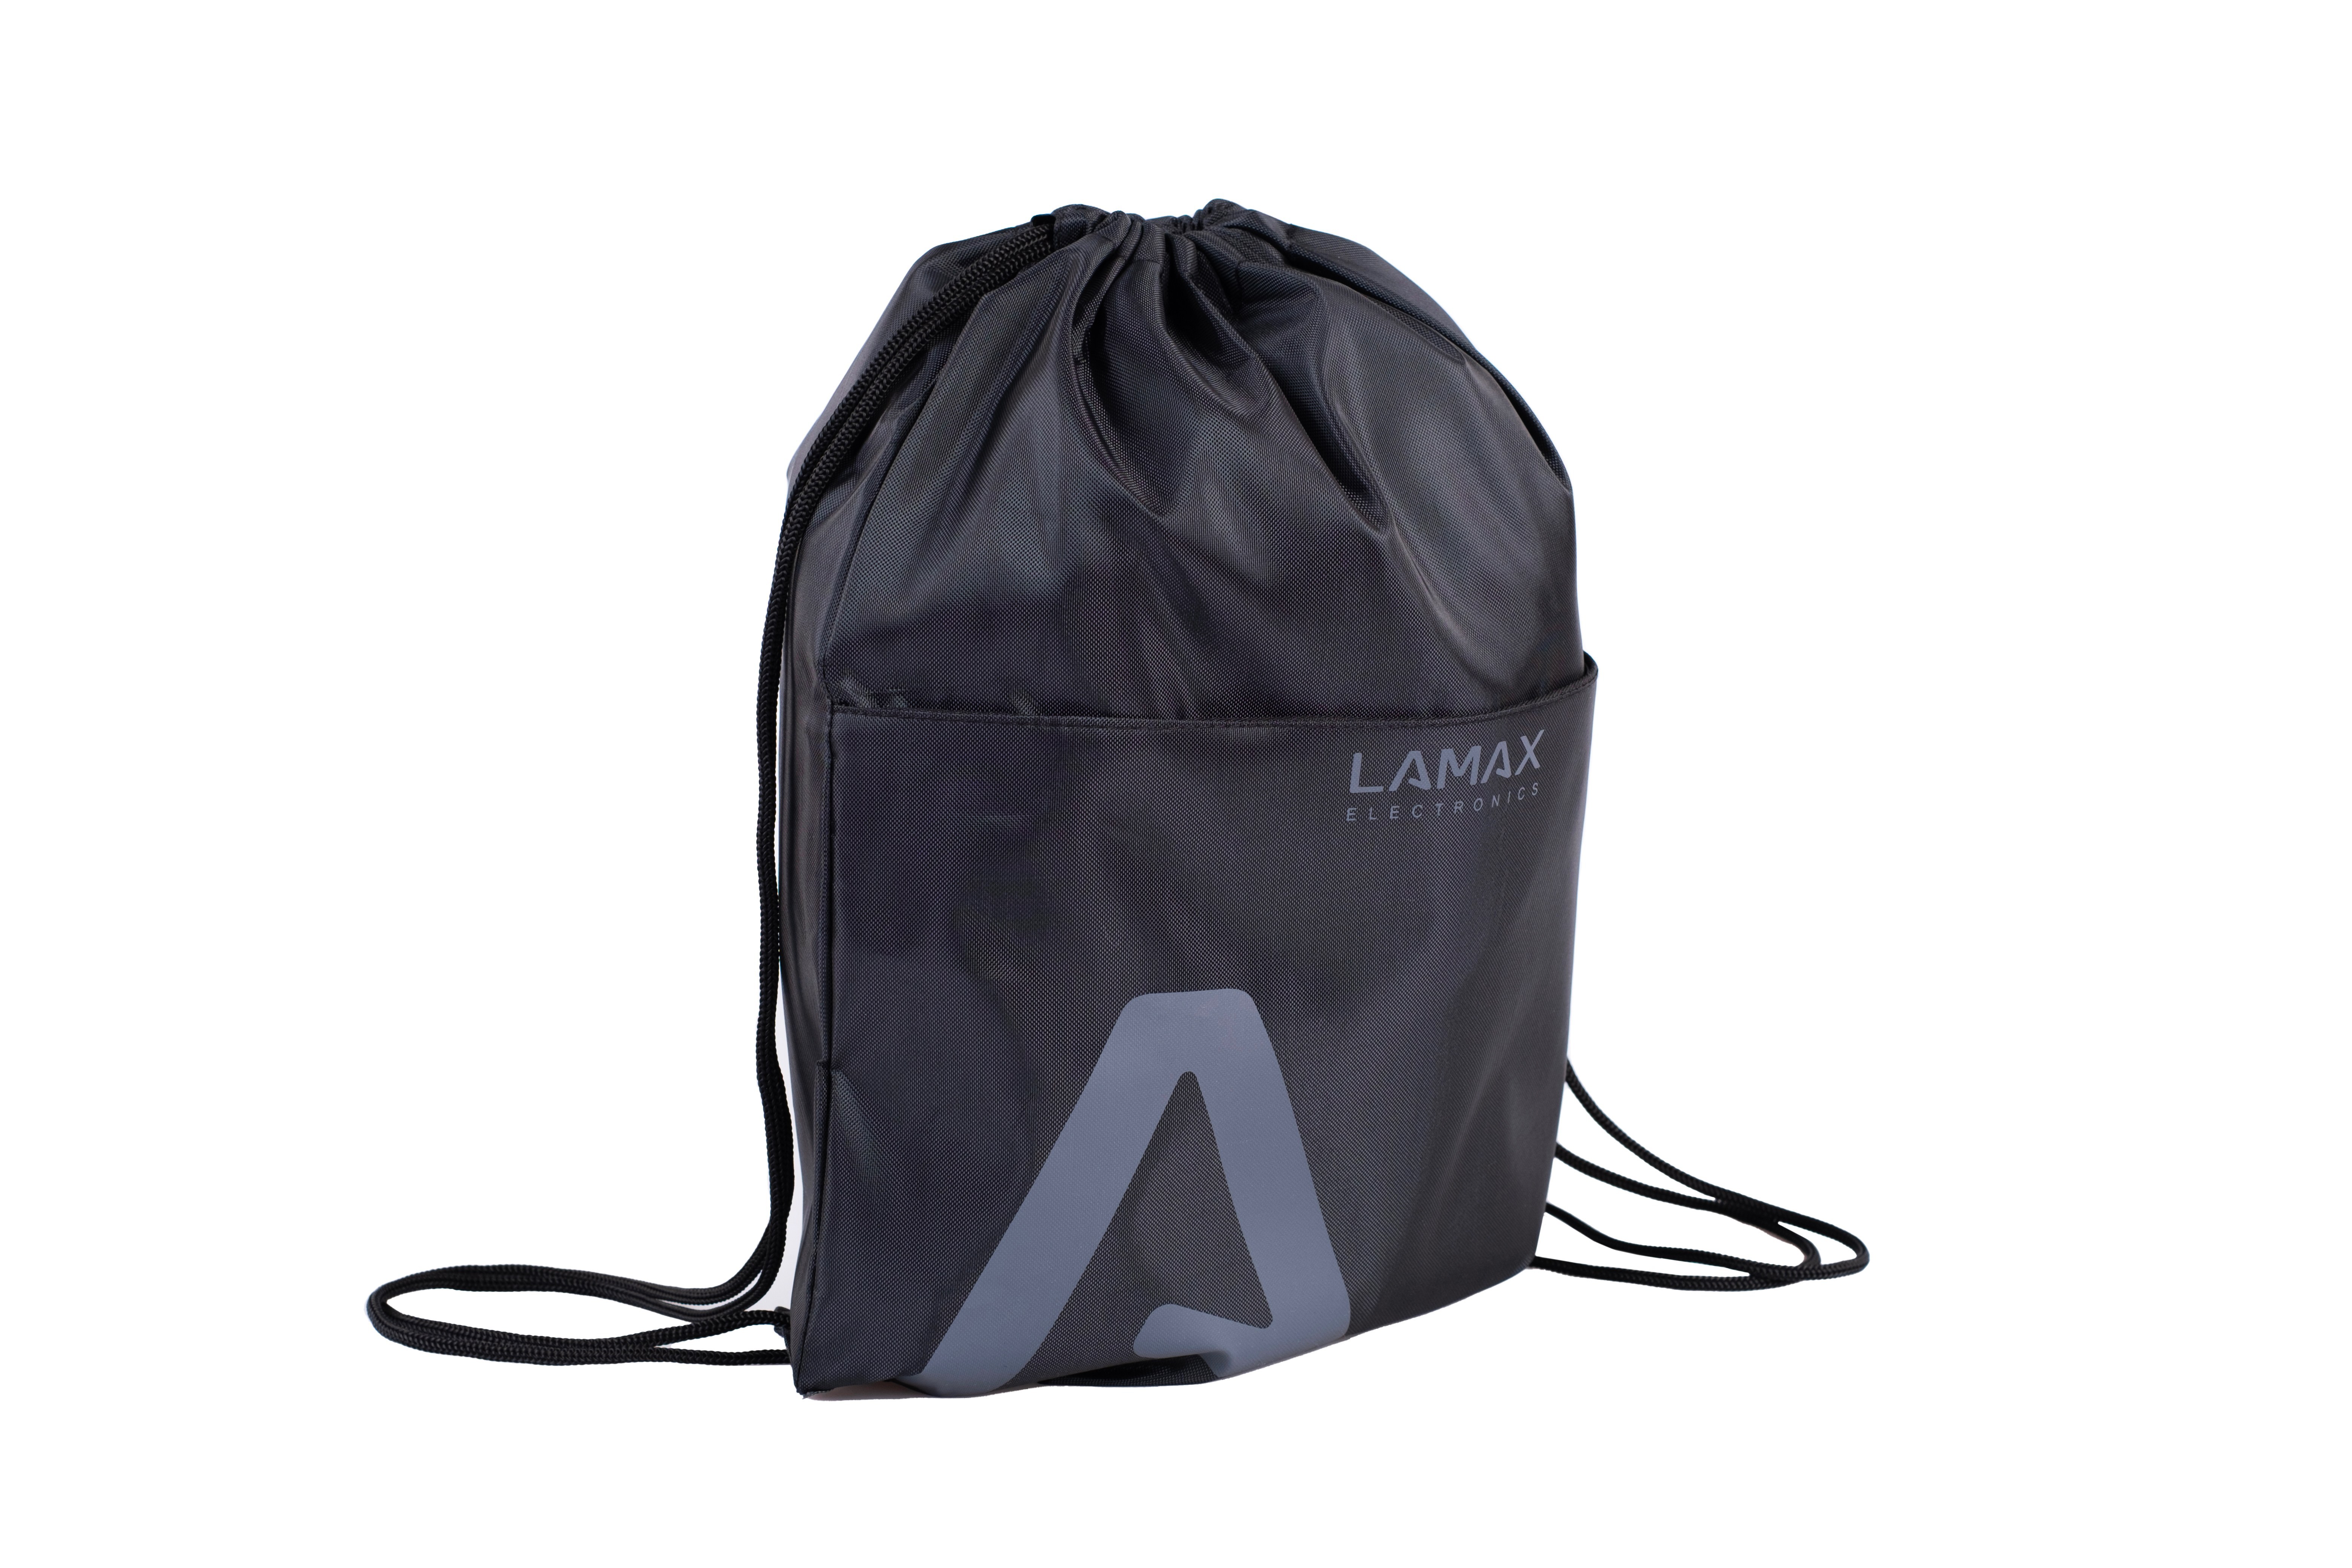 LAMAX LAMAX Sportpack Black